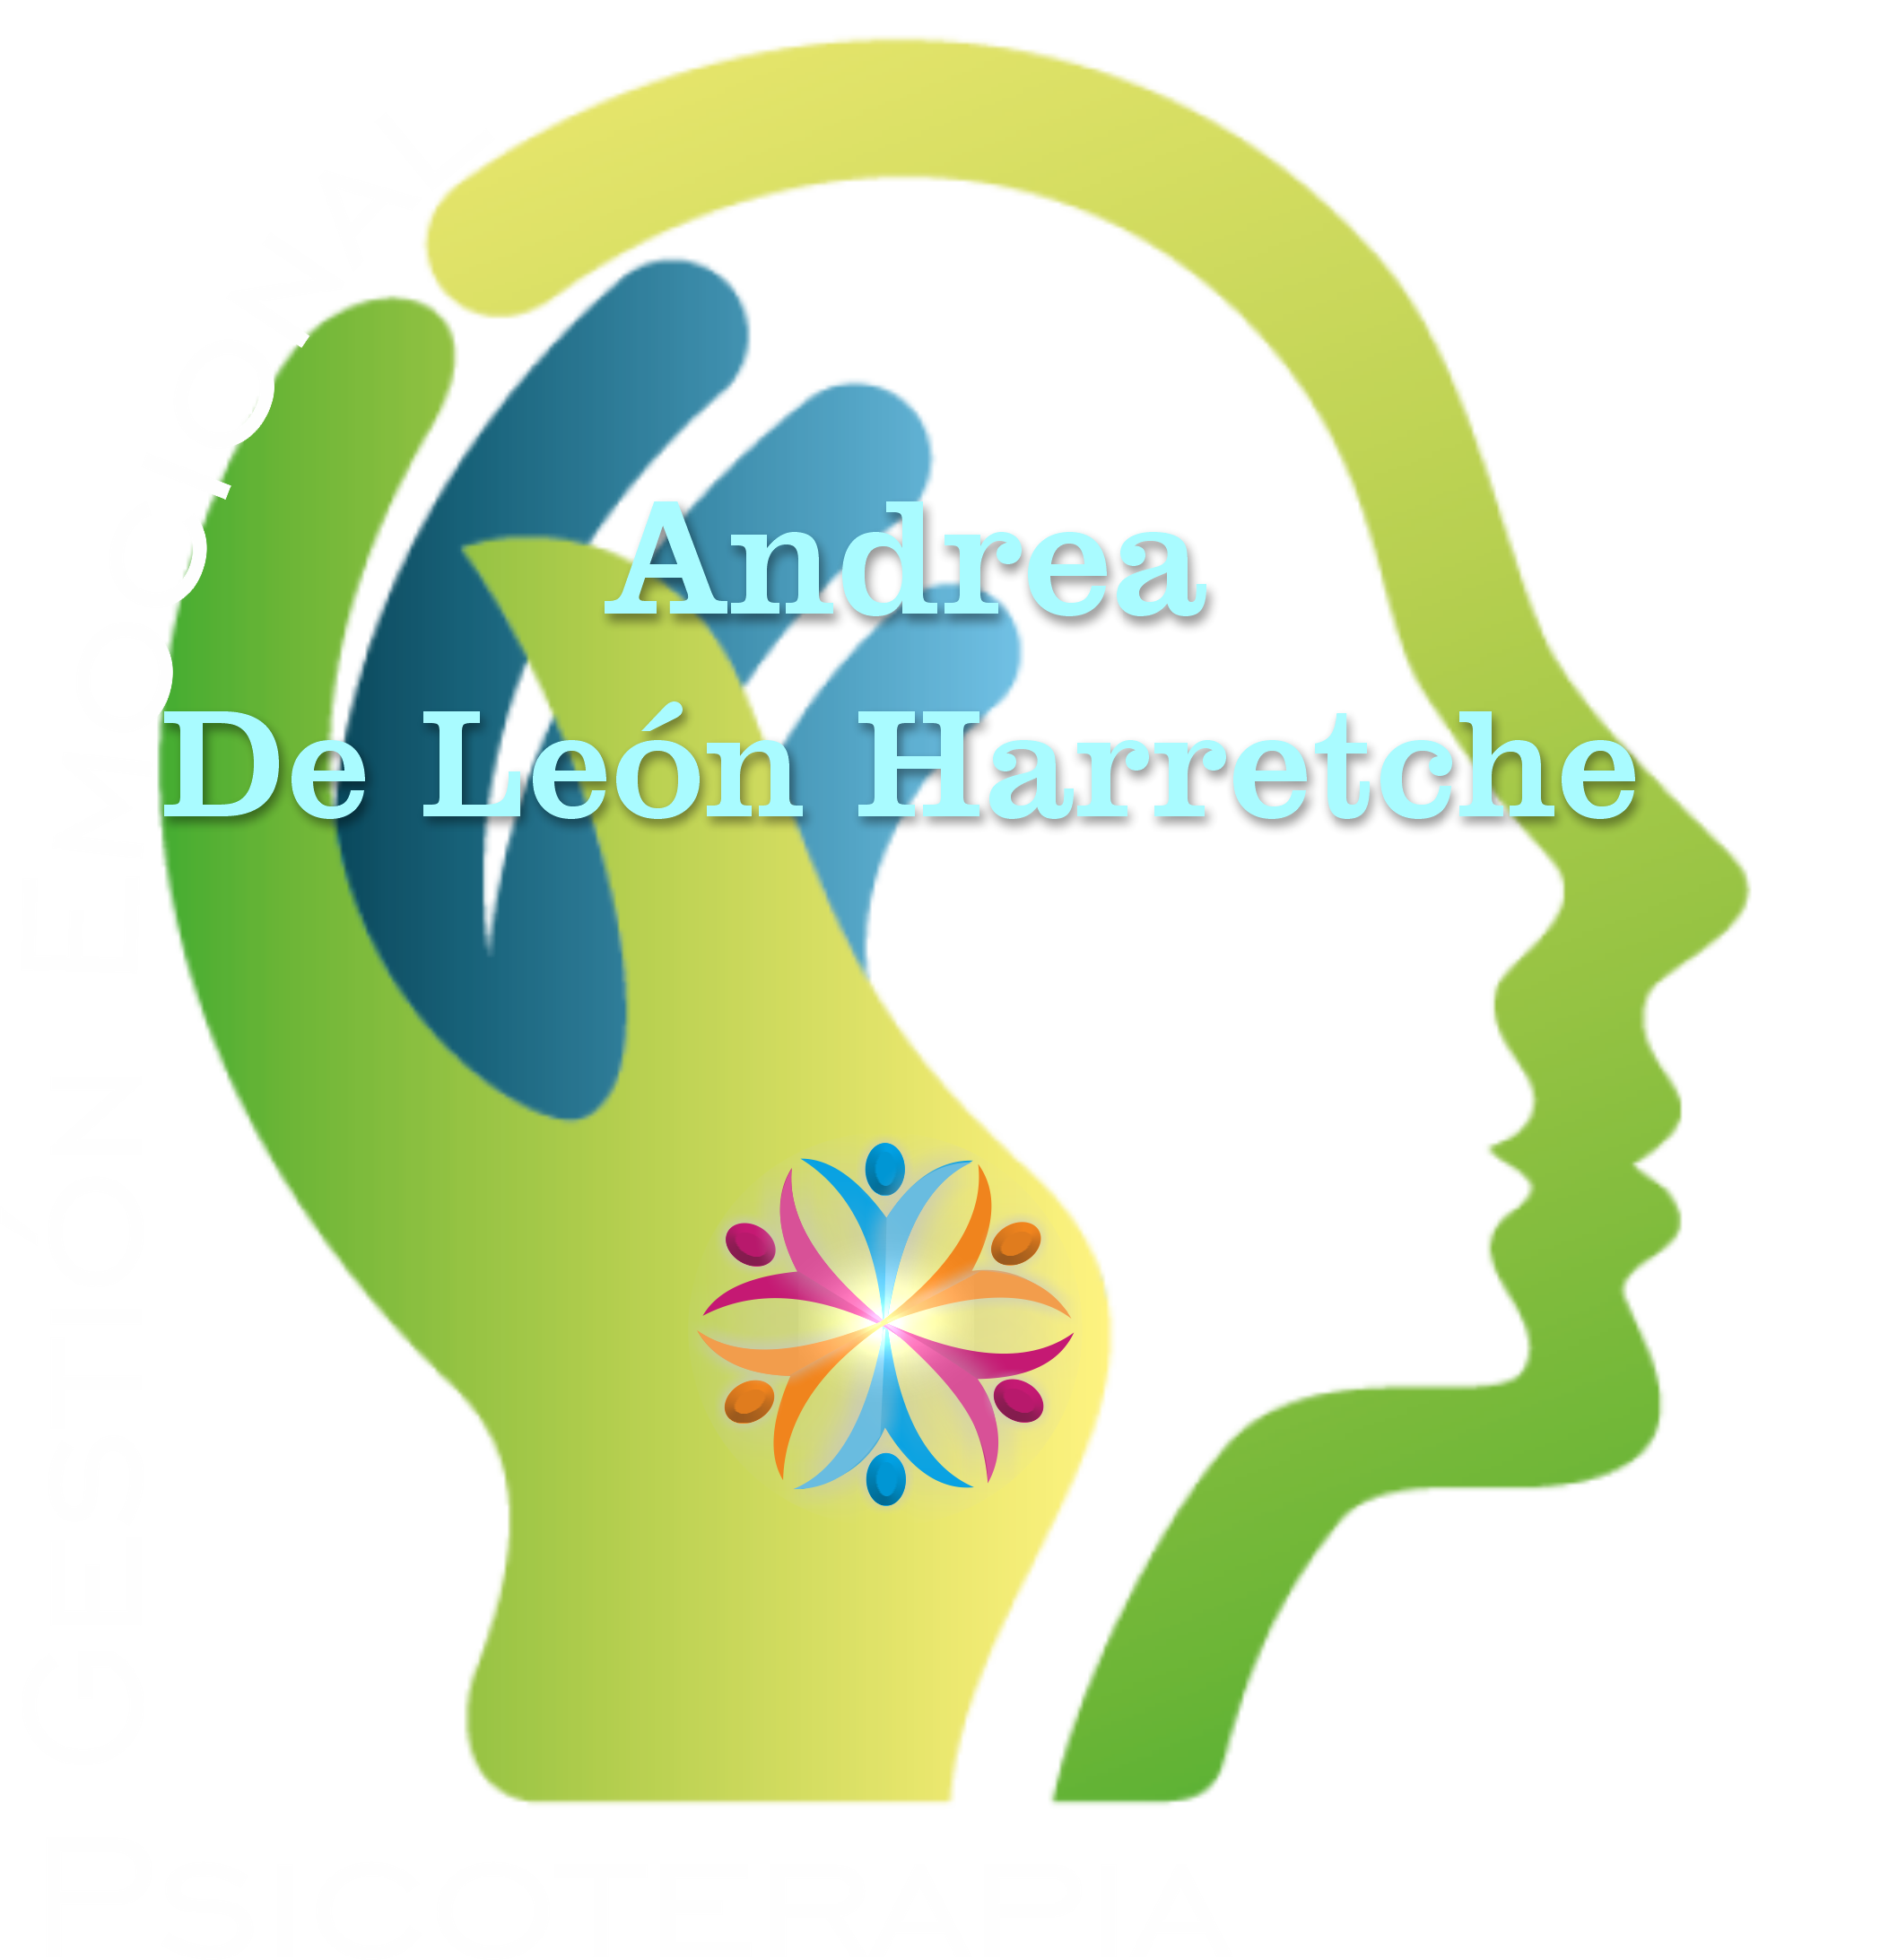 Andrea De Leon Harretche